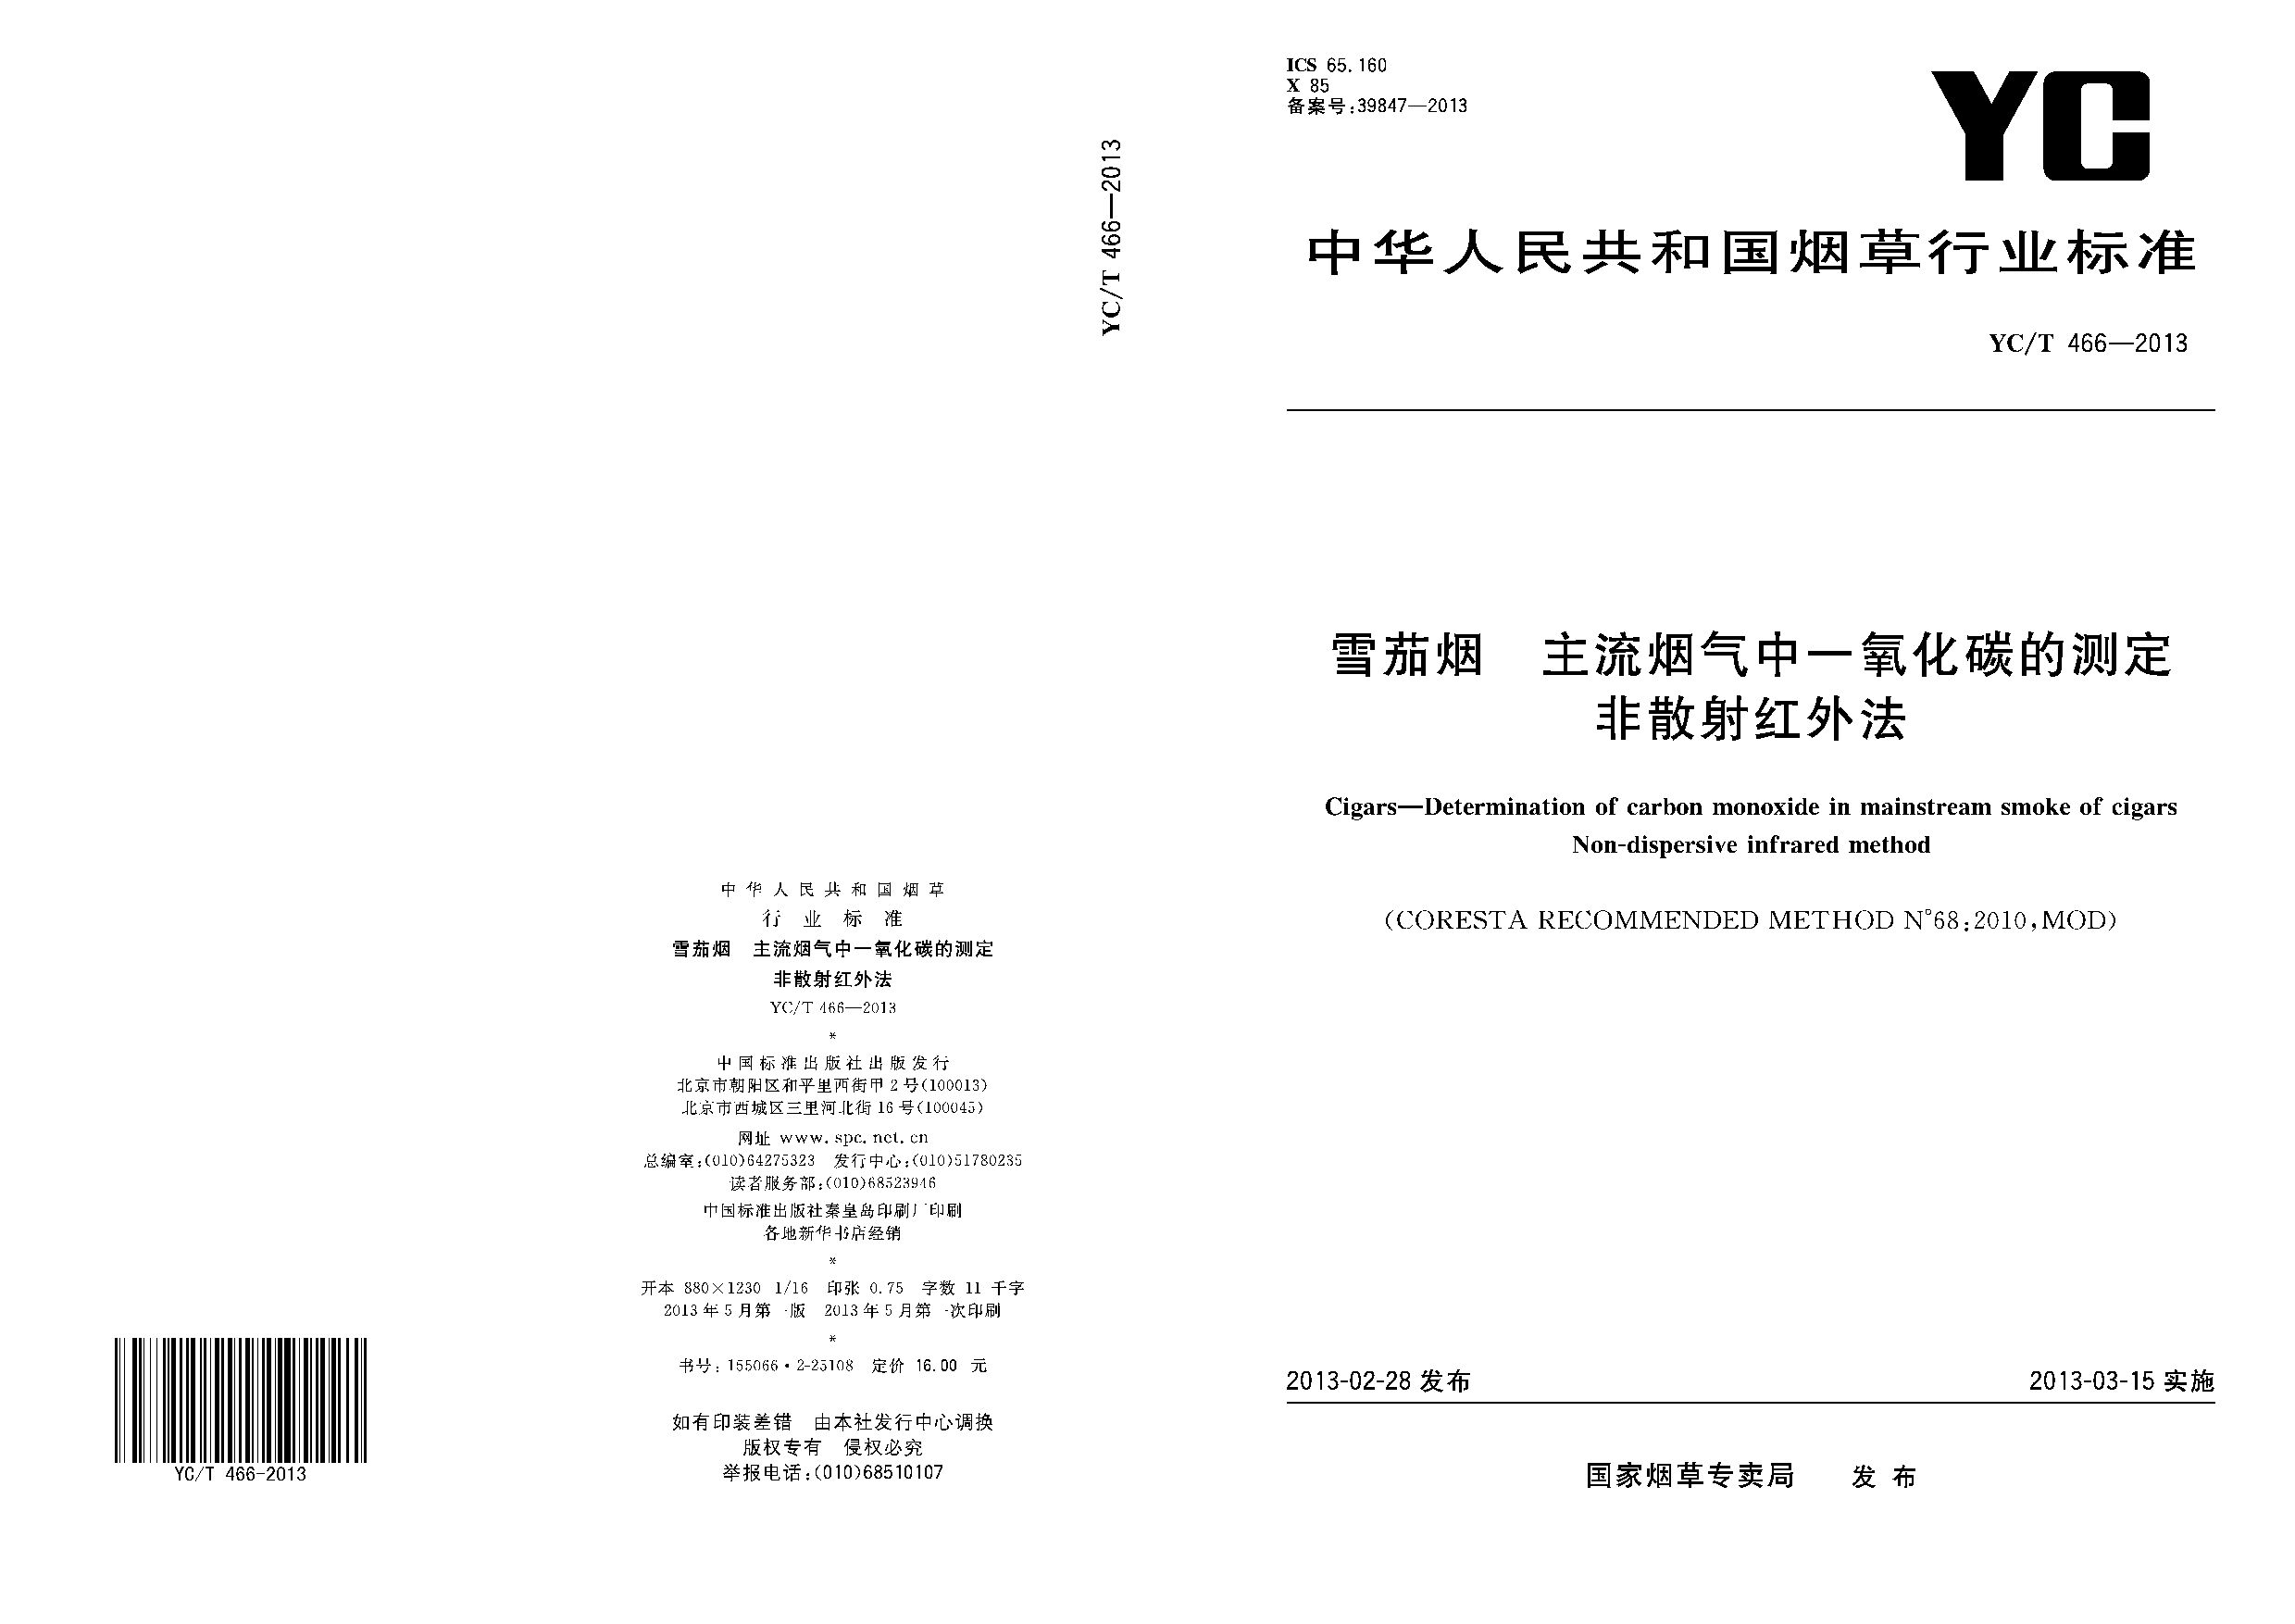 YC/T 466-2013封面图